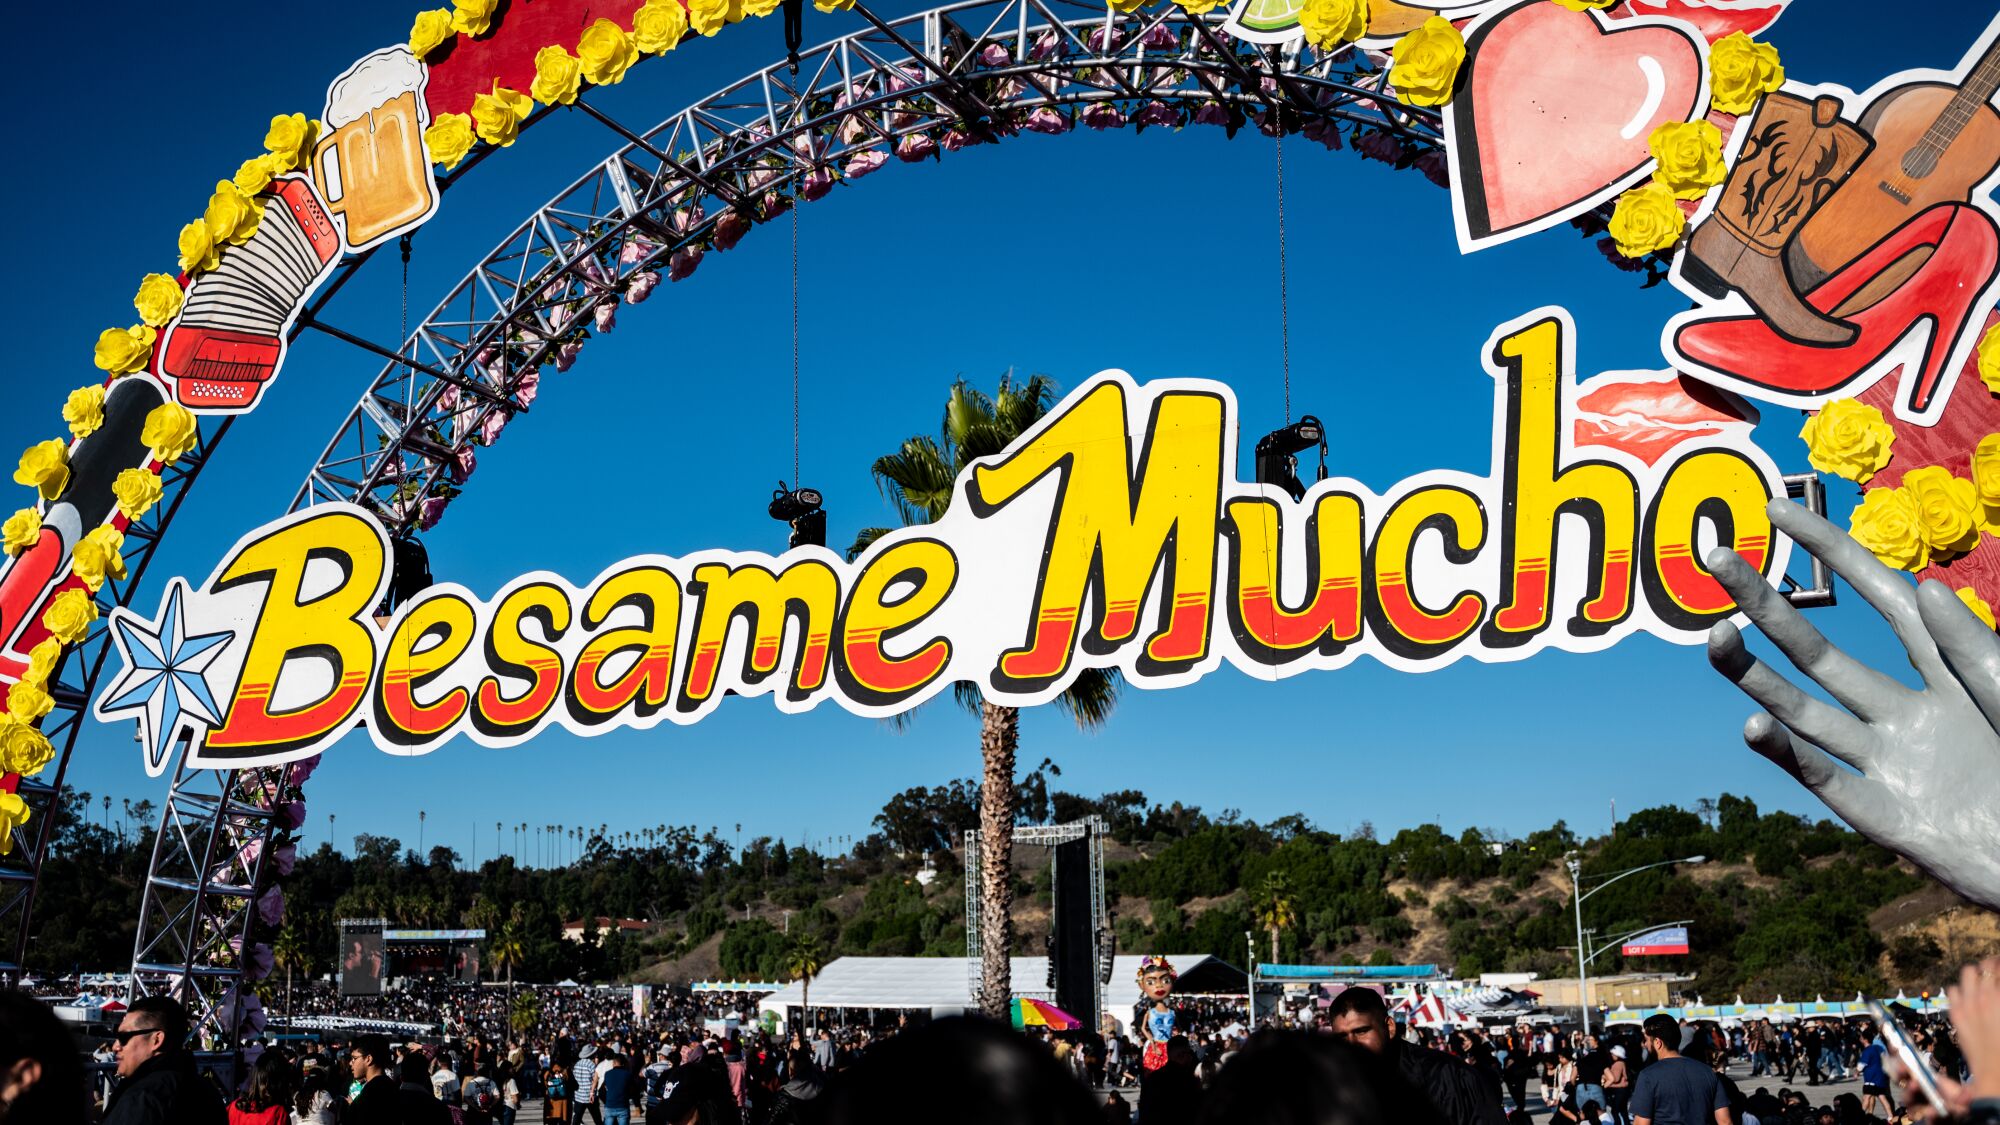 Imágenes del festival Bésame Mucho que tuvo lugar en Los Ángeles el sábado 3 de diciembre de 2022.